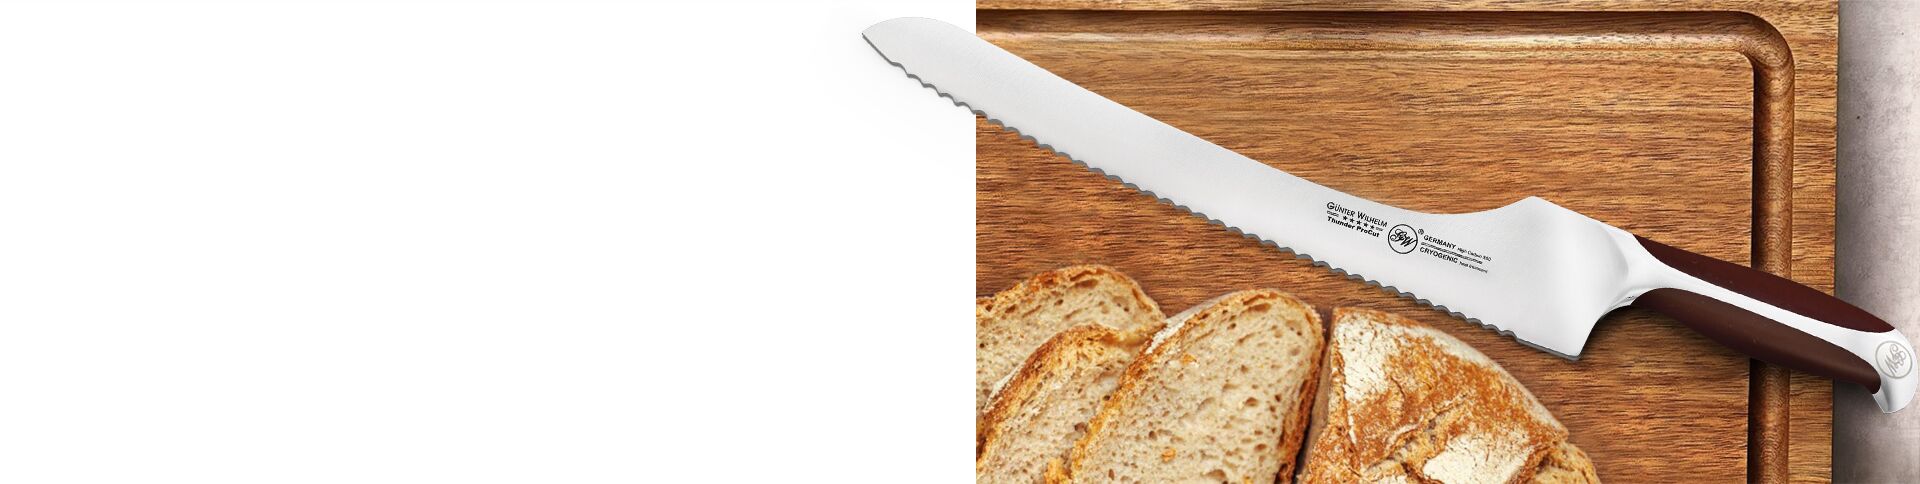 Bread Knives header